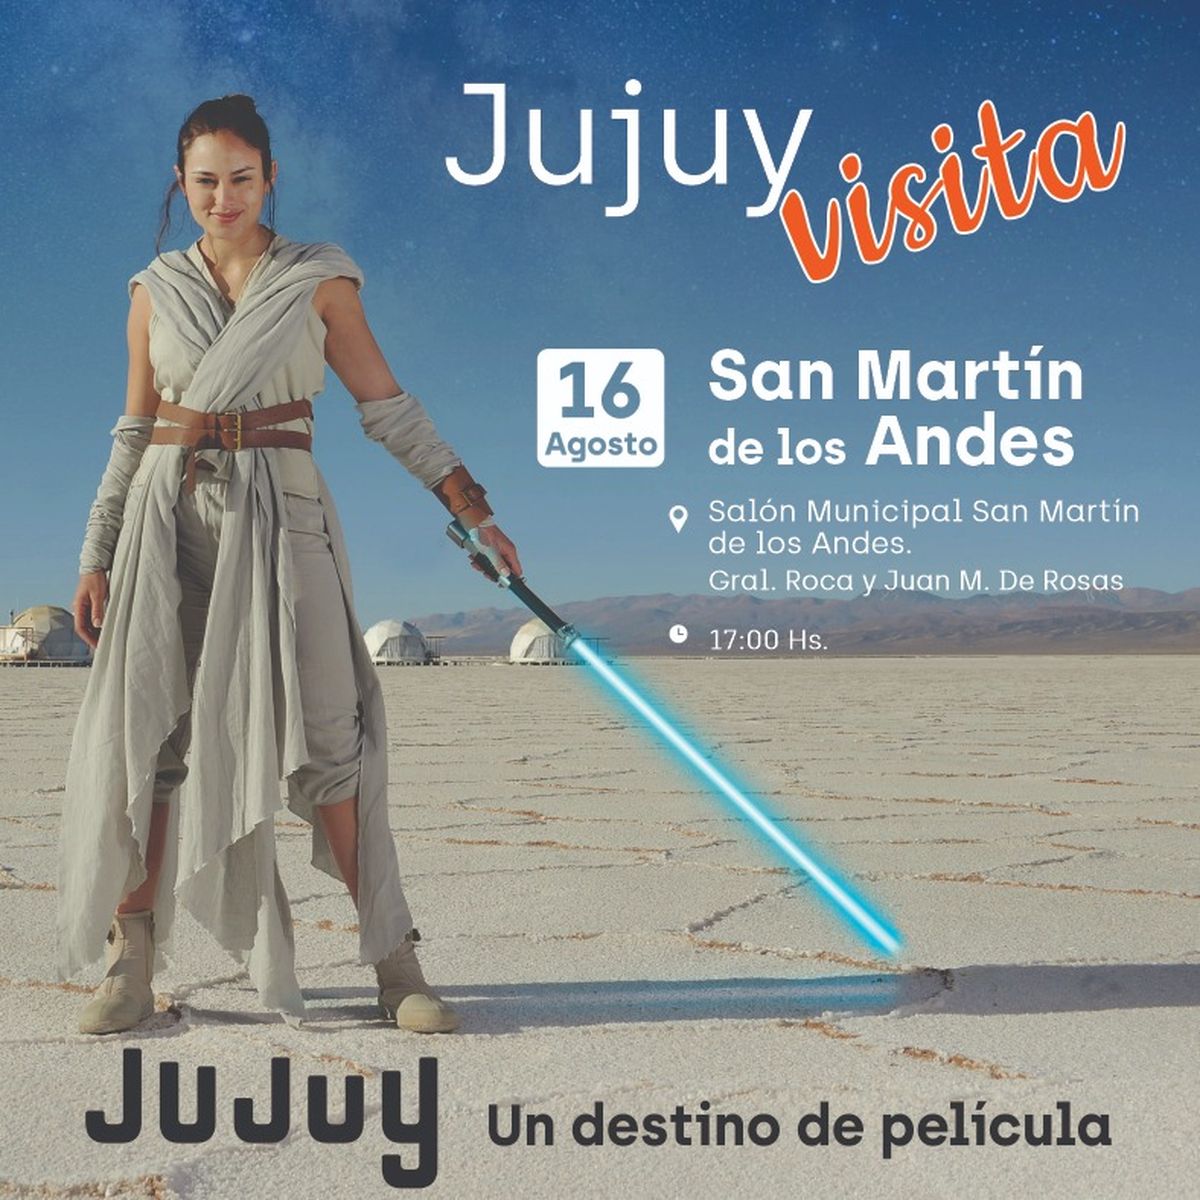 Jujuy se promocionará en la Patagonia